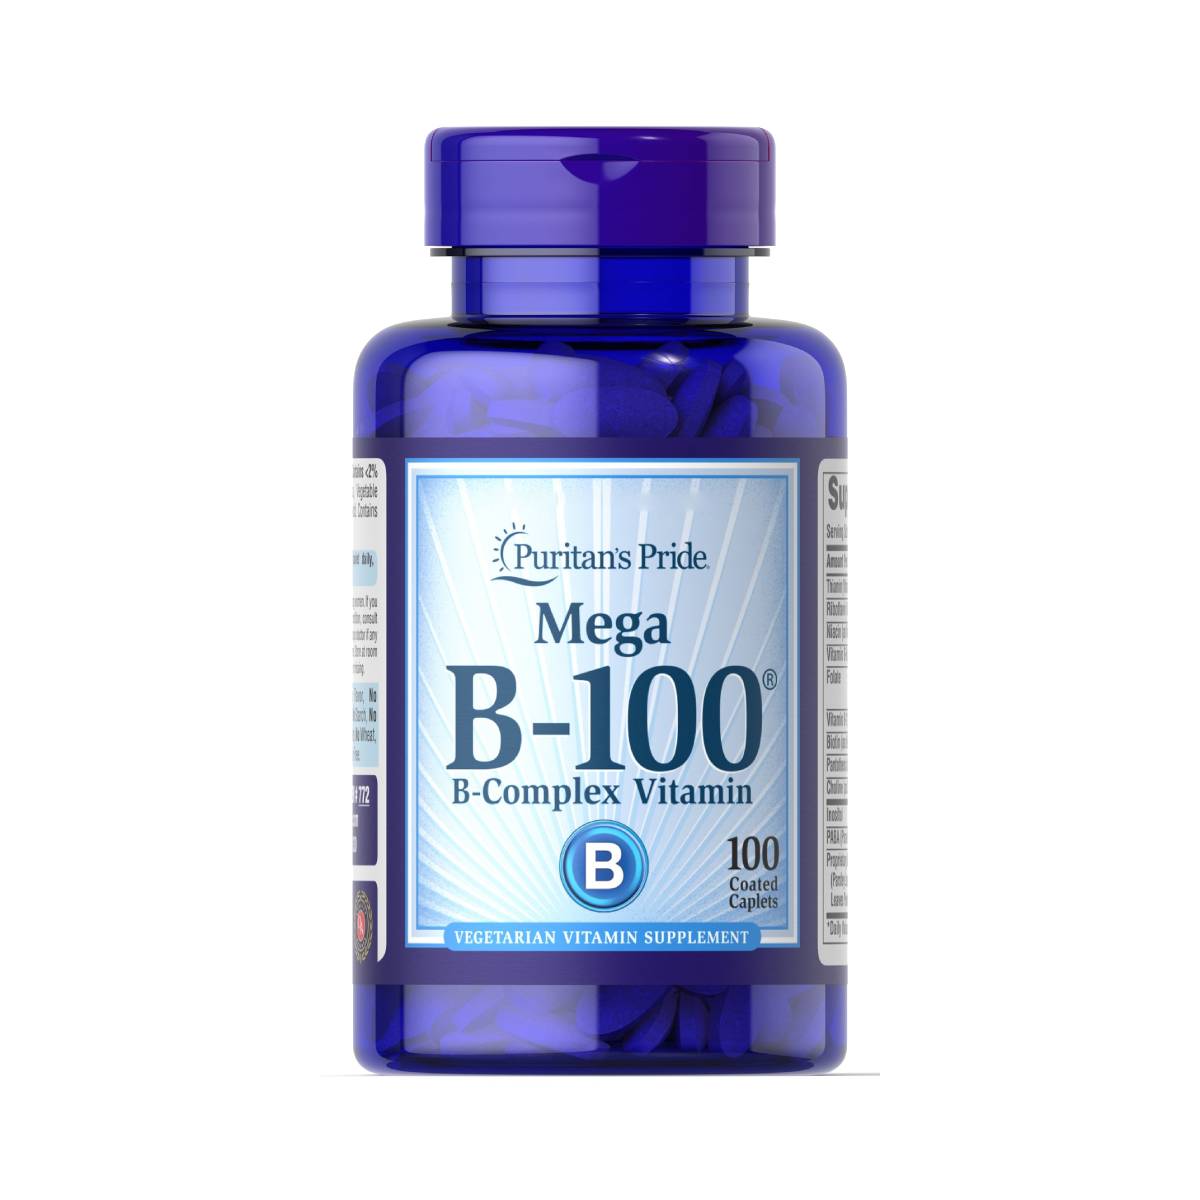 Puritan's Pride, Vitamin B-100 ® Complex